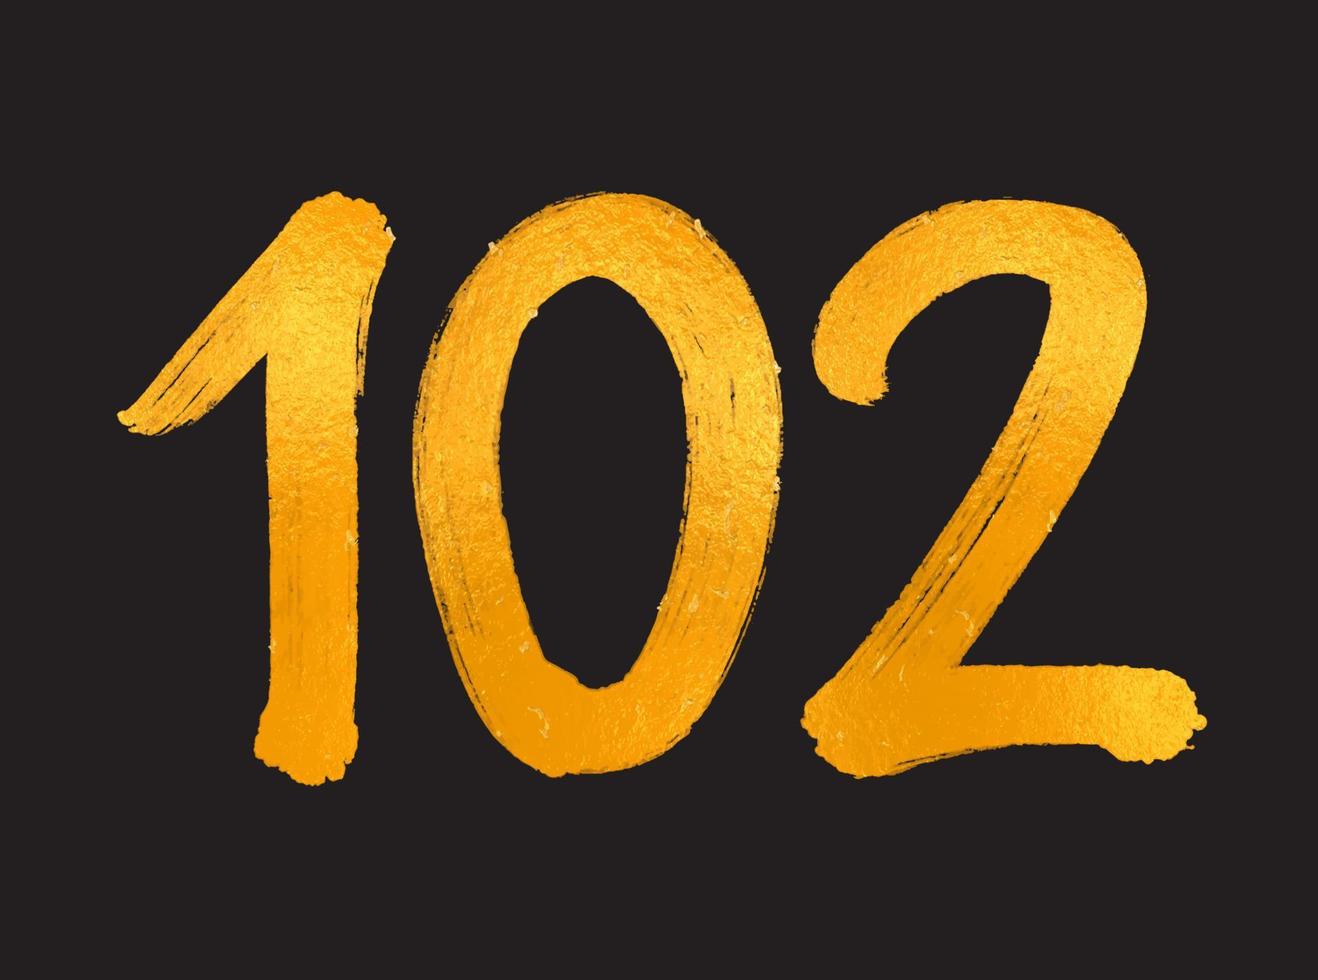 102 numero logo vettore illustrazione, 102 anni anniversario celebrazione vettore modello, 102° compleanno, oro lettering numeri spazzola disegno mano disegnato schizzo, numero logo design per Stampa, t camicia